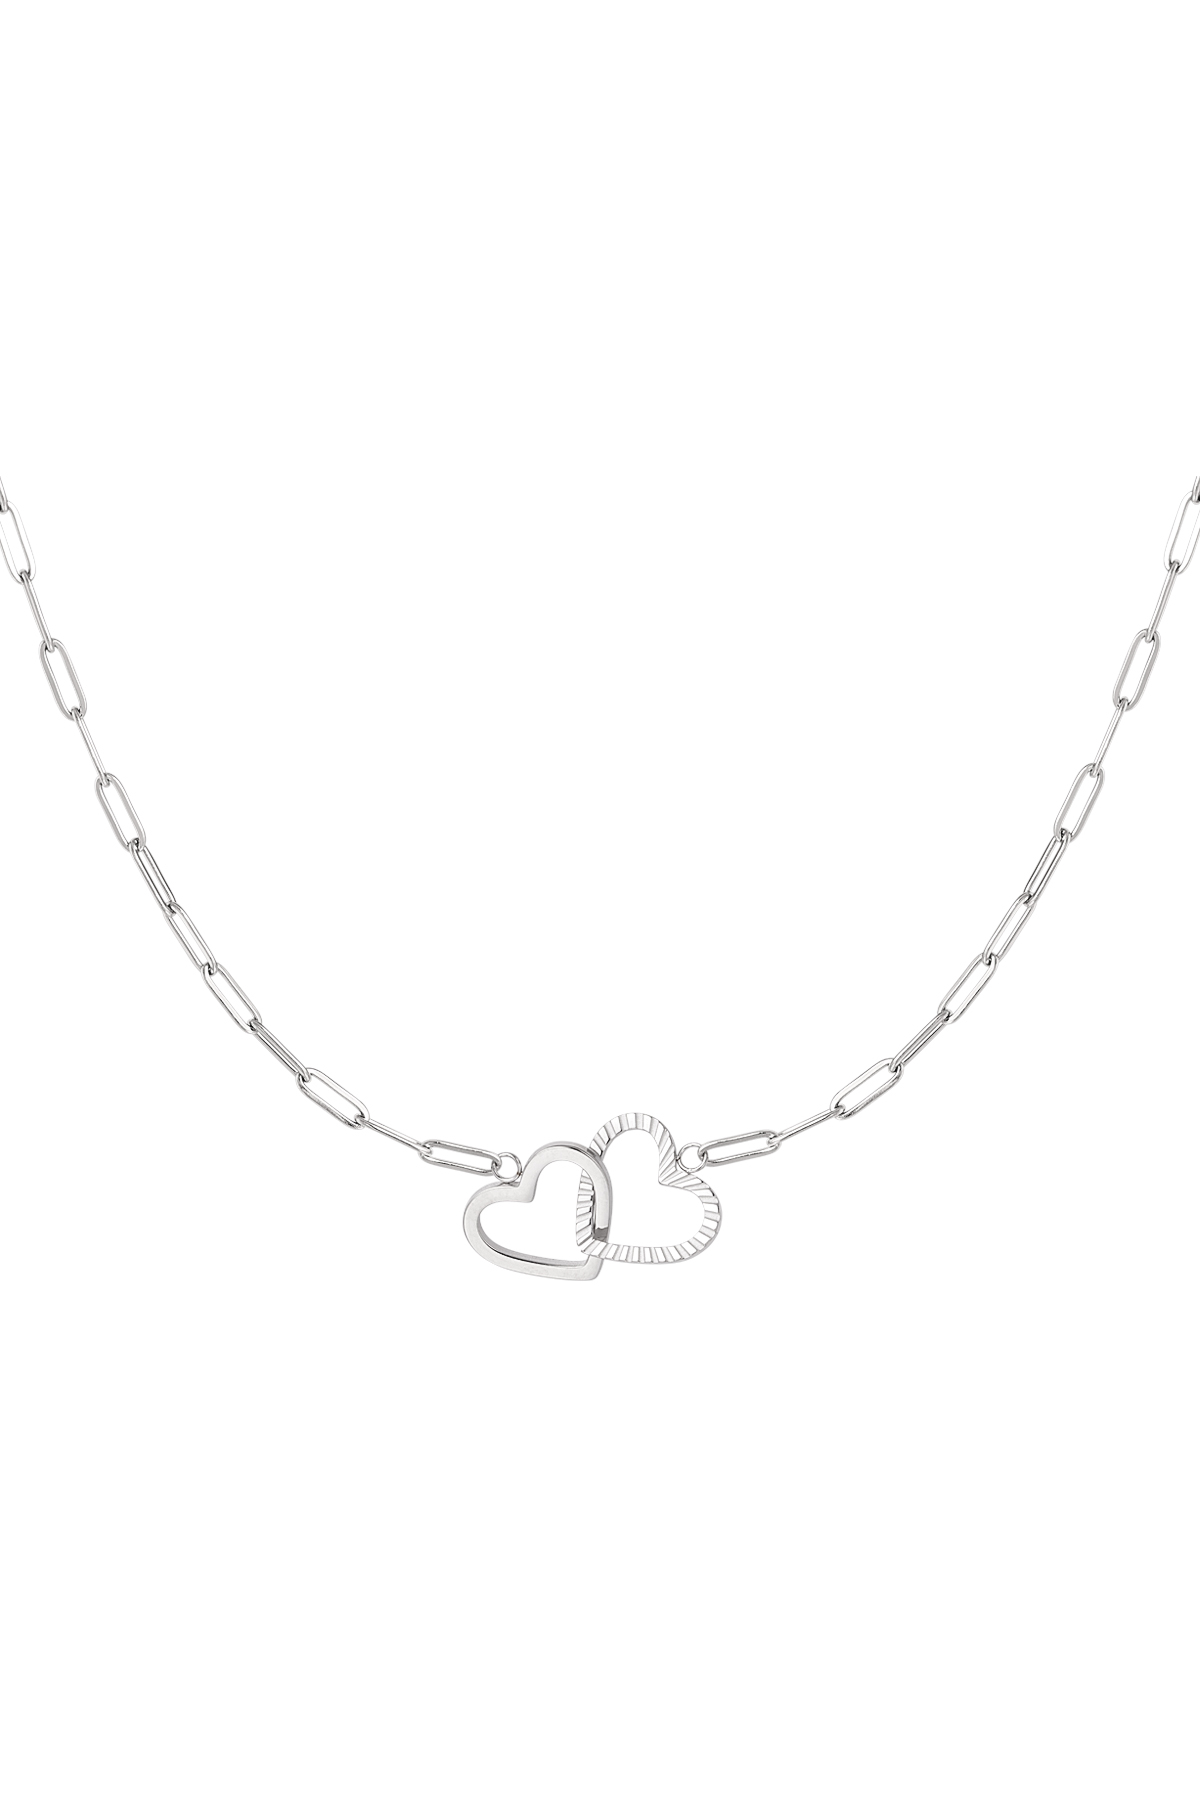 Halskette verbundene Herzen - Silber Edelstahl